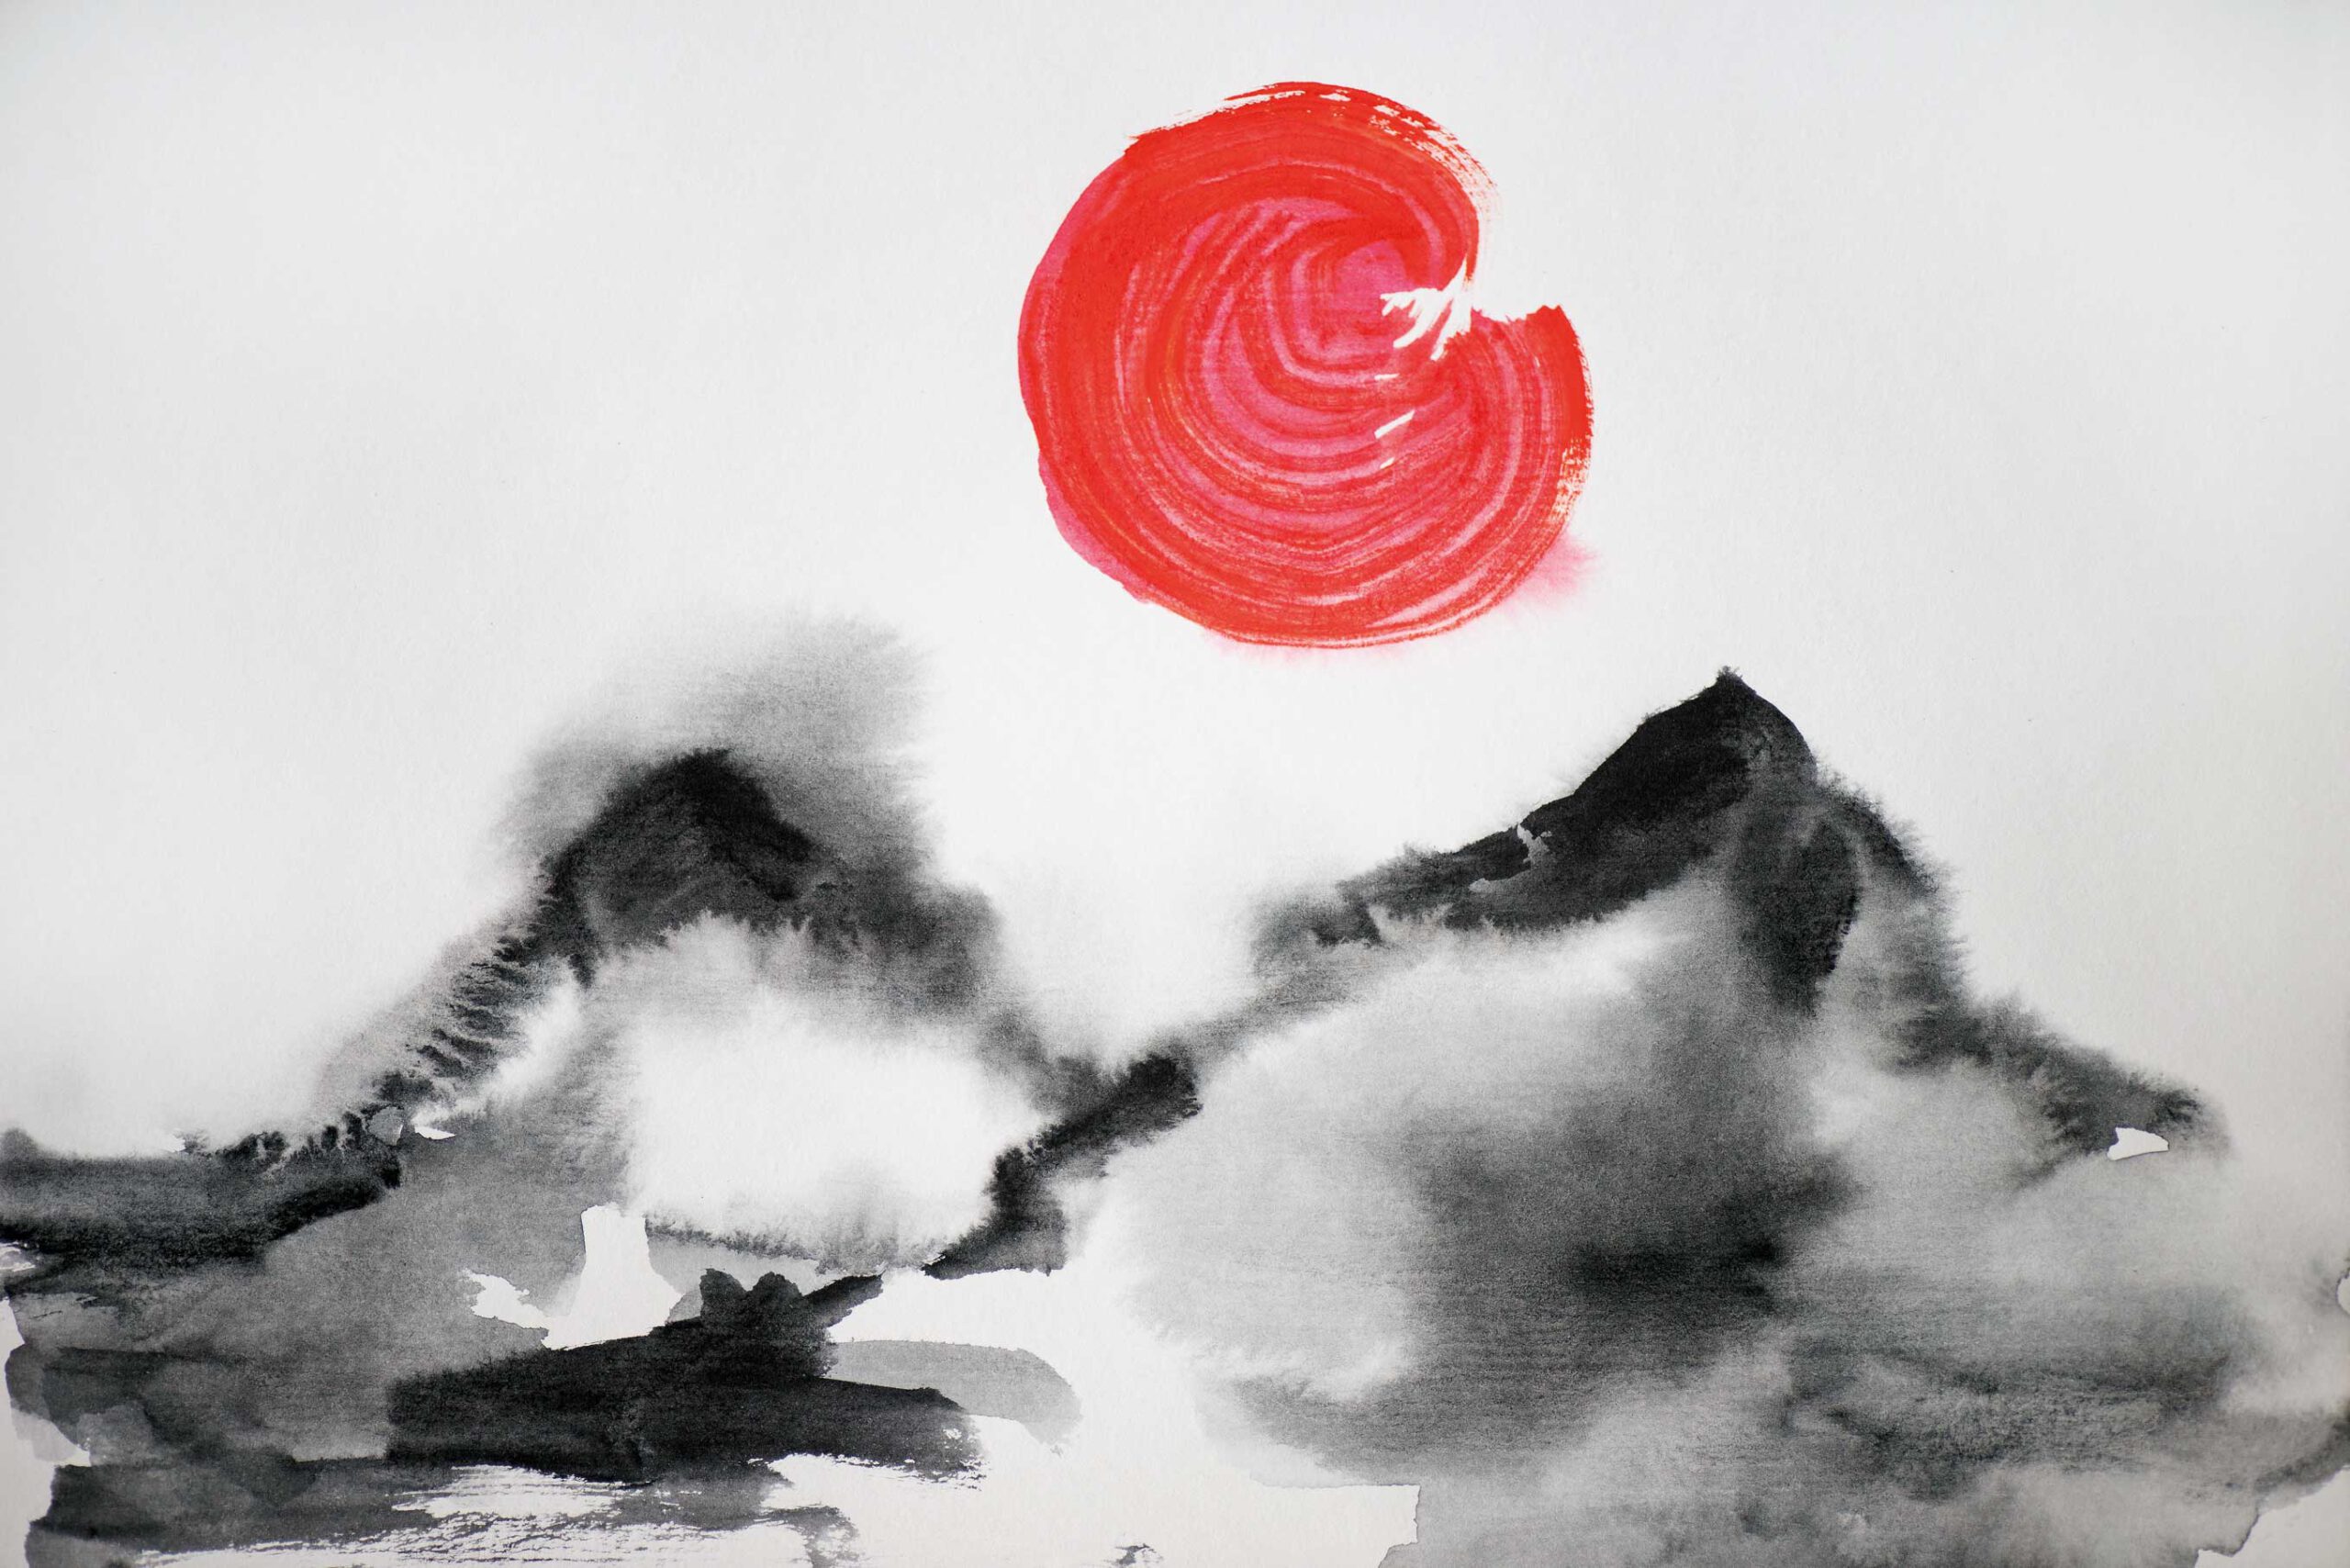 Japanisches Gemälde. Zwei Berge in grau und schwarz. Die Sonne in rot.